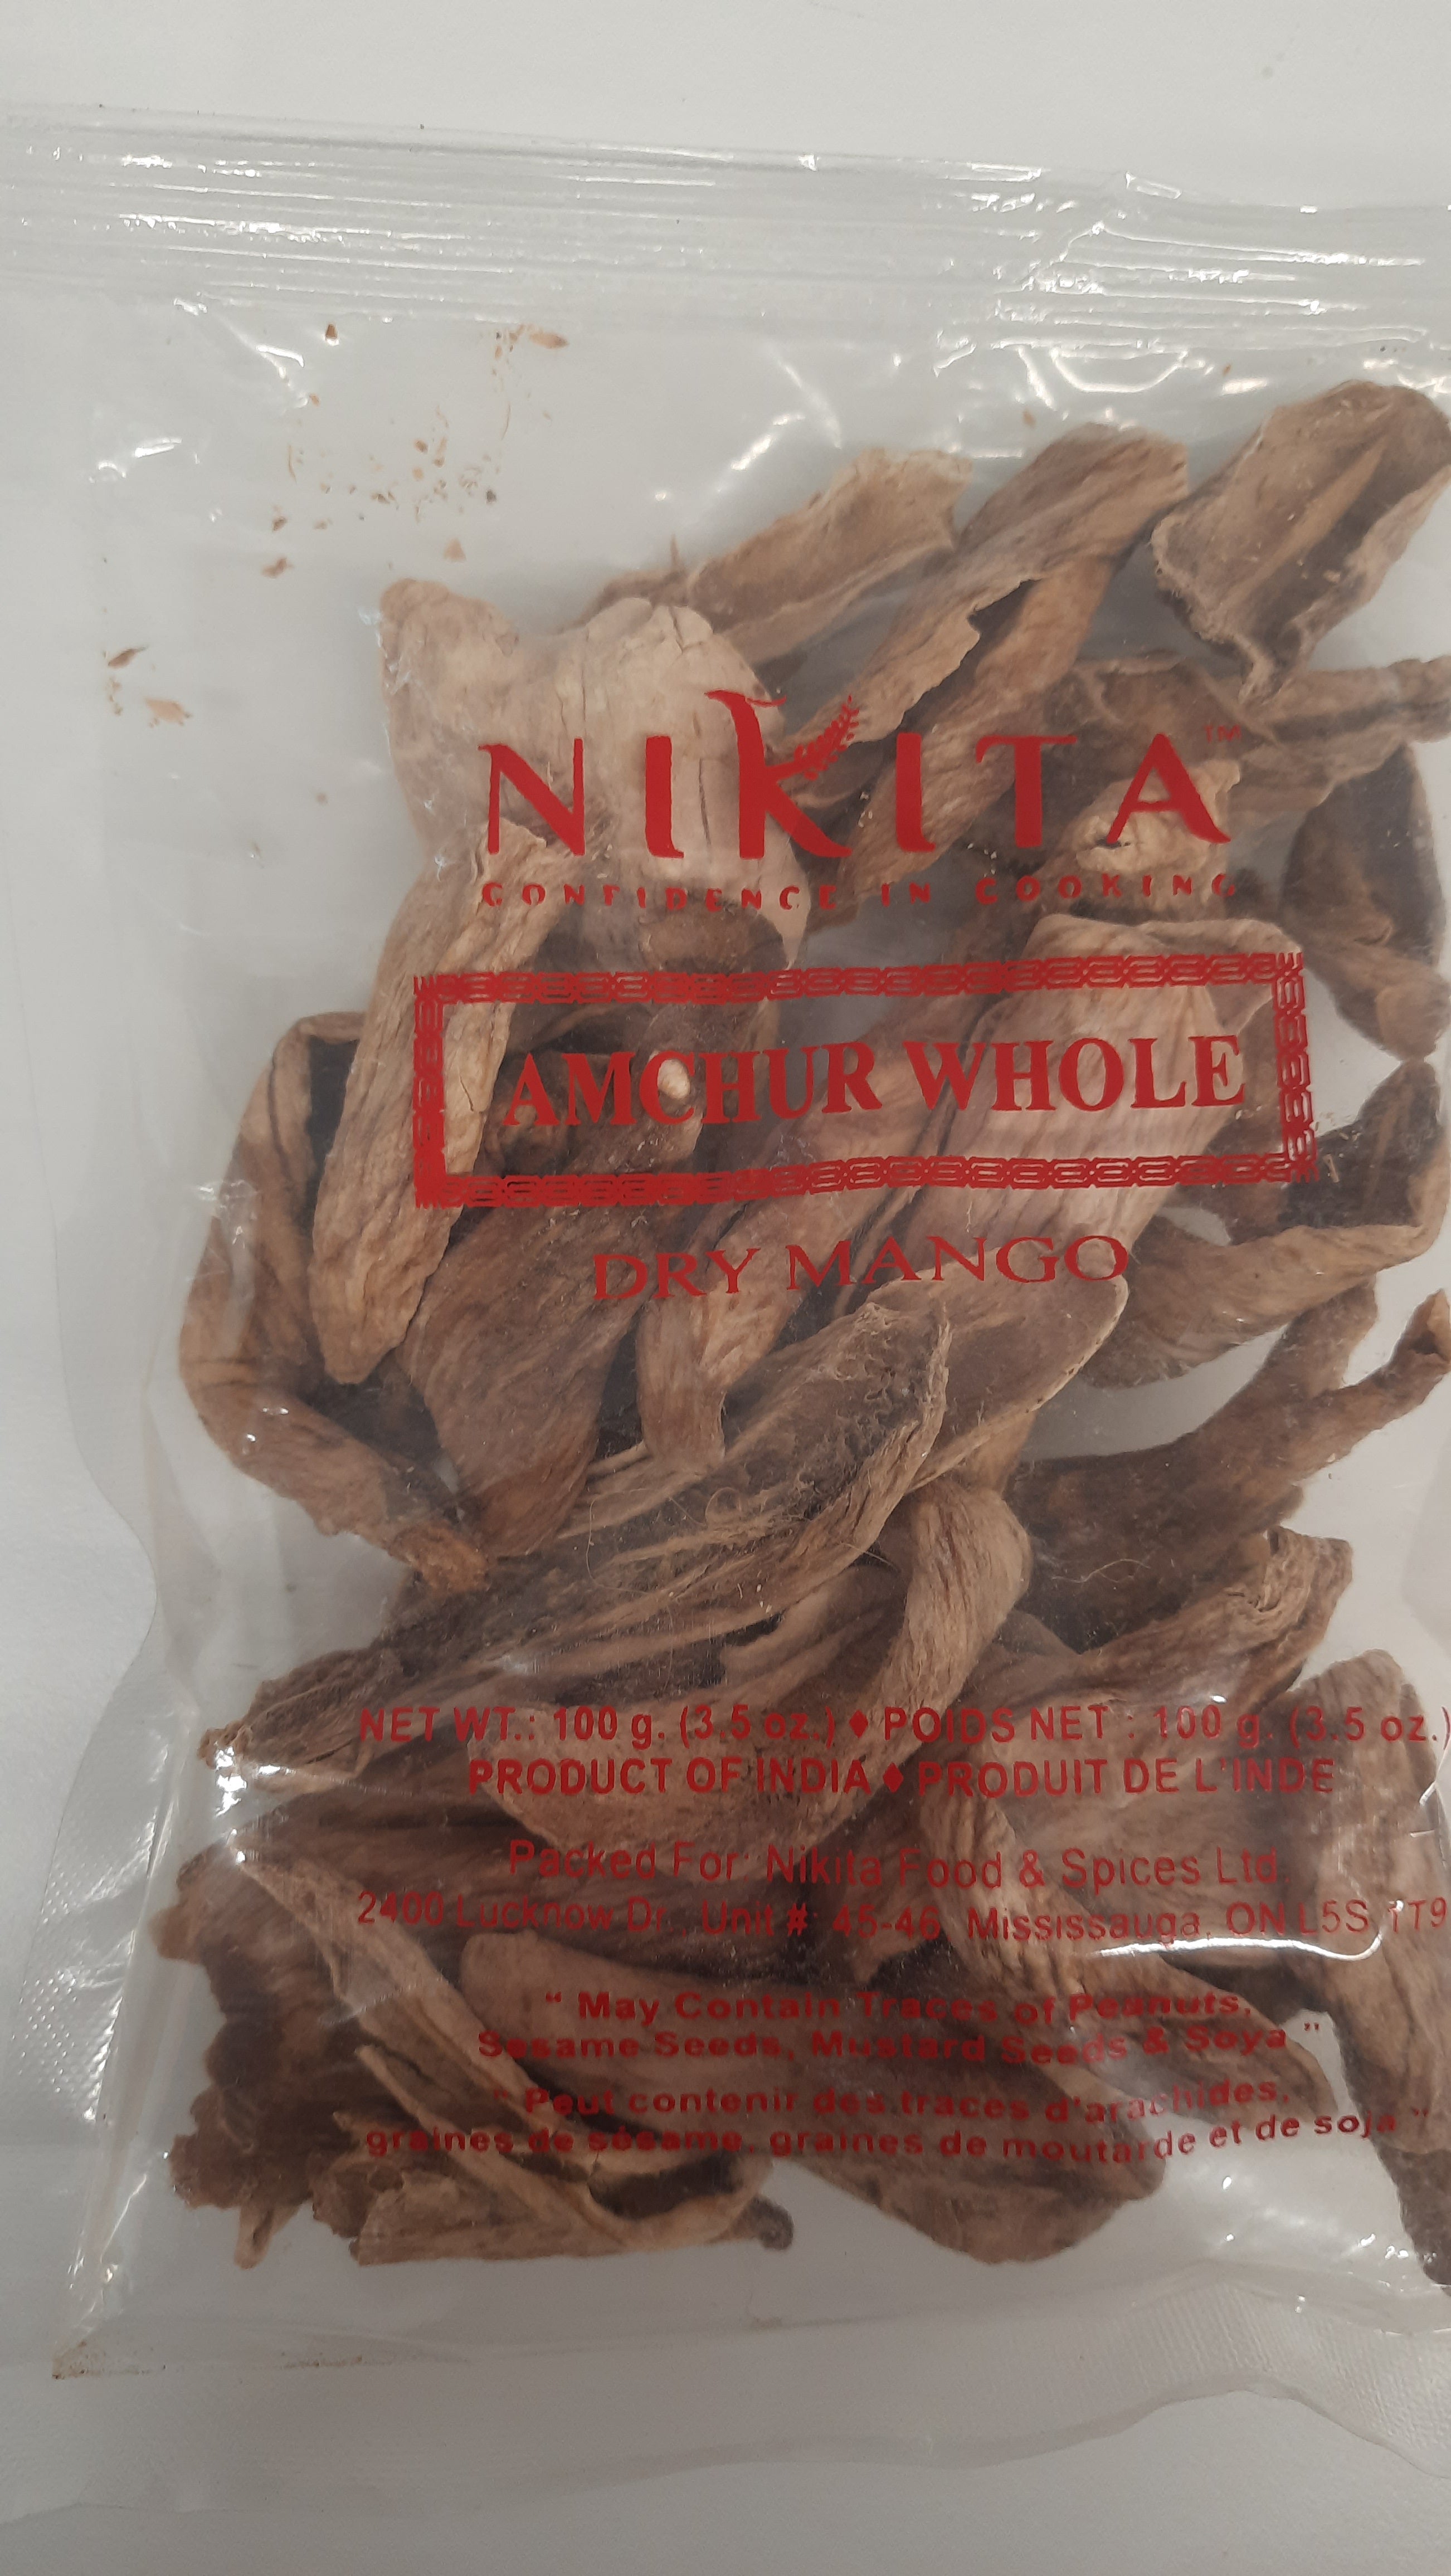 Nikita - Amchur Whole 100g